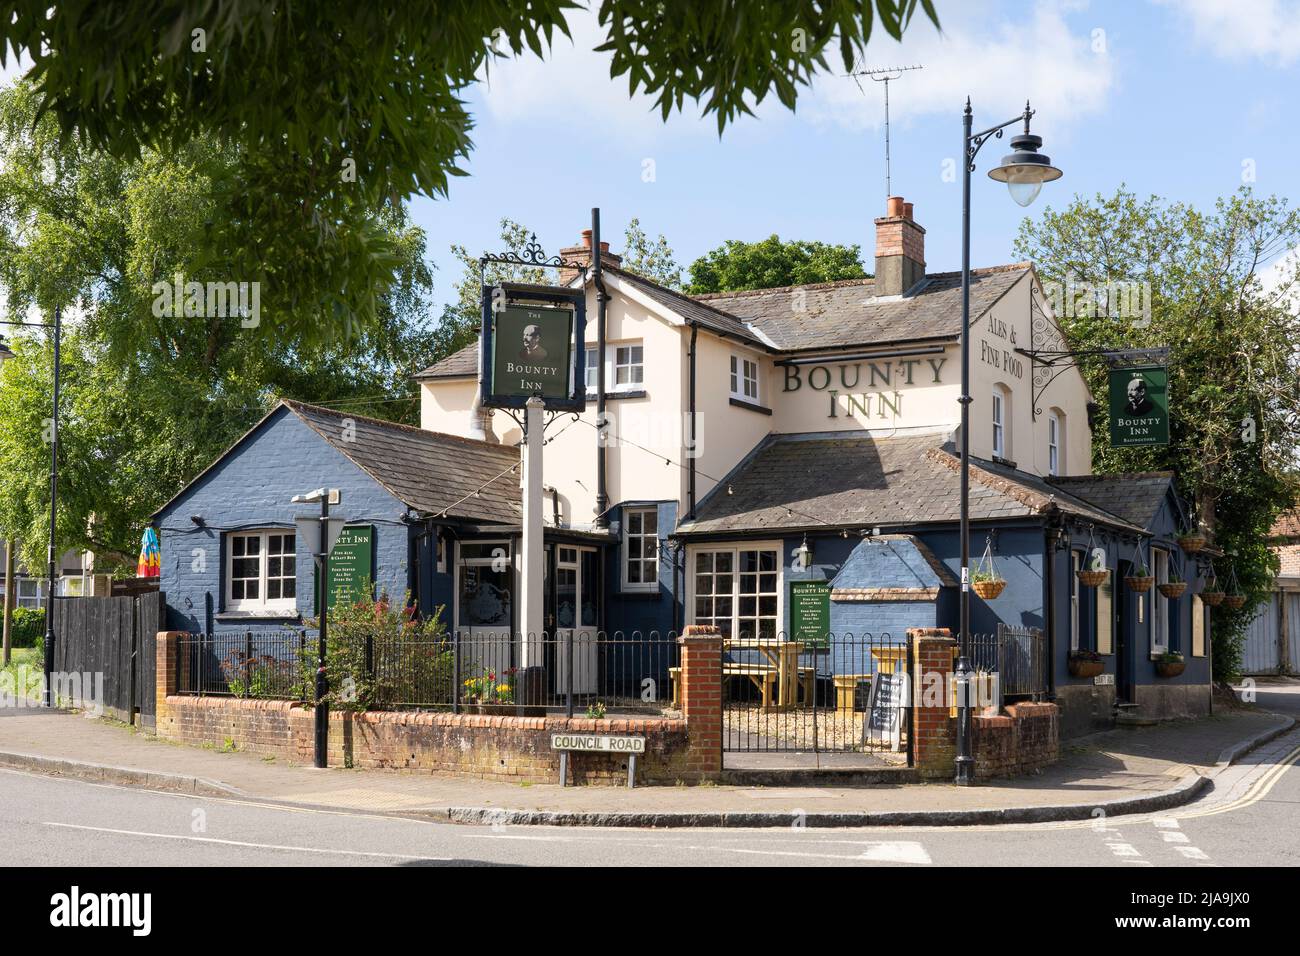 Le Bounty Inn est un pub populaire du centre-ville de Basingstoke, datant du milieu du siècle 18th. Hampshire, Angleterre. Thème - pub et industrie hôtelière Banque D'Images